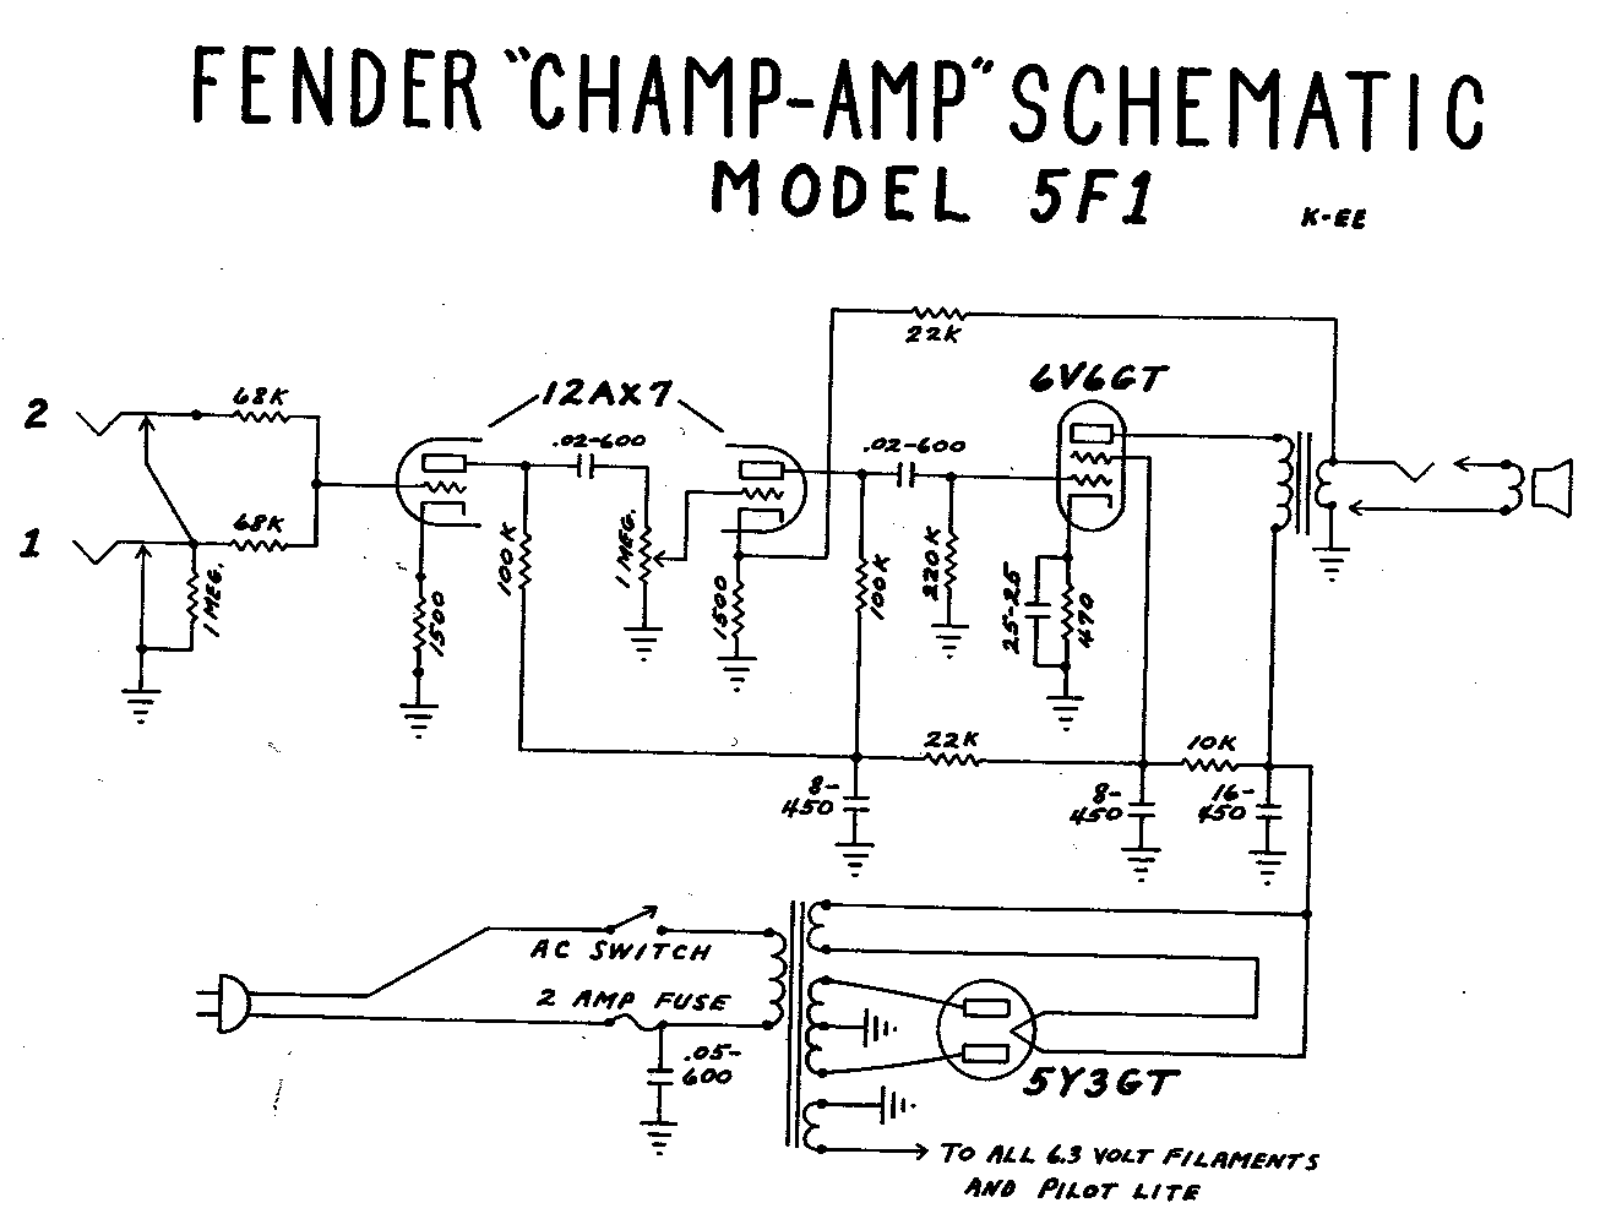 Fender Champ-5F1 Schematic